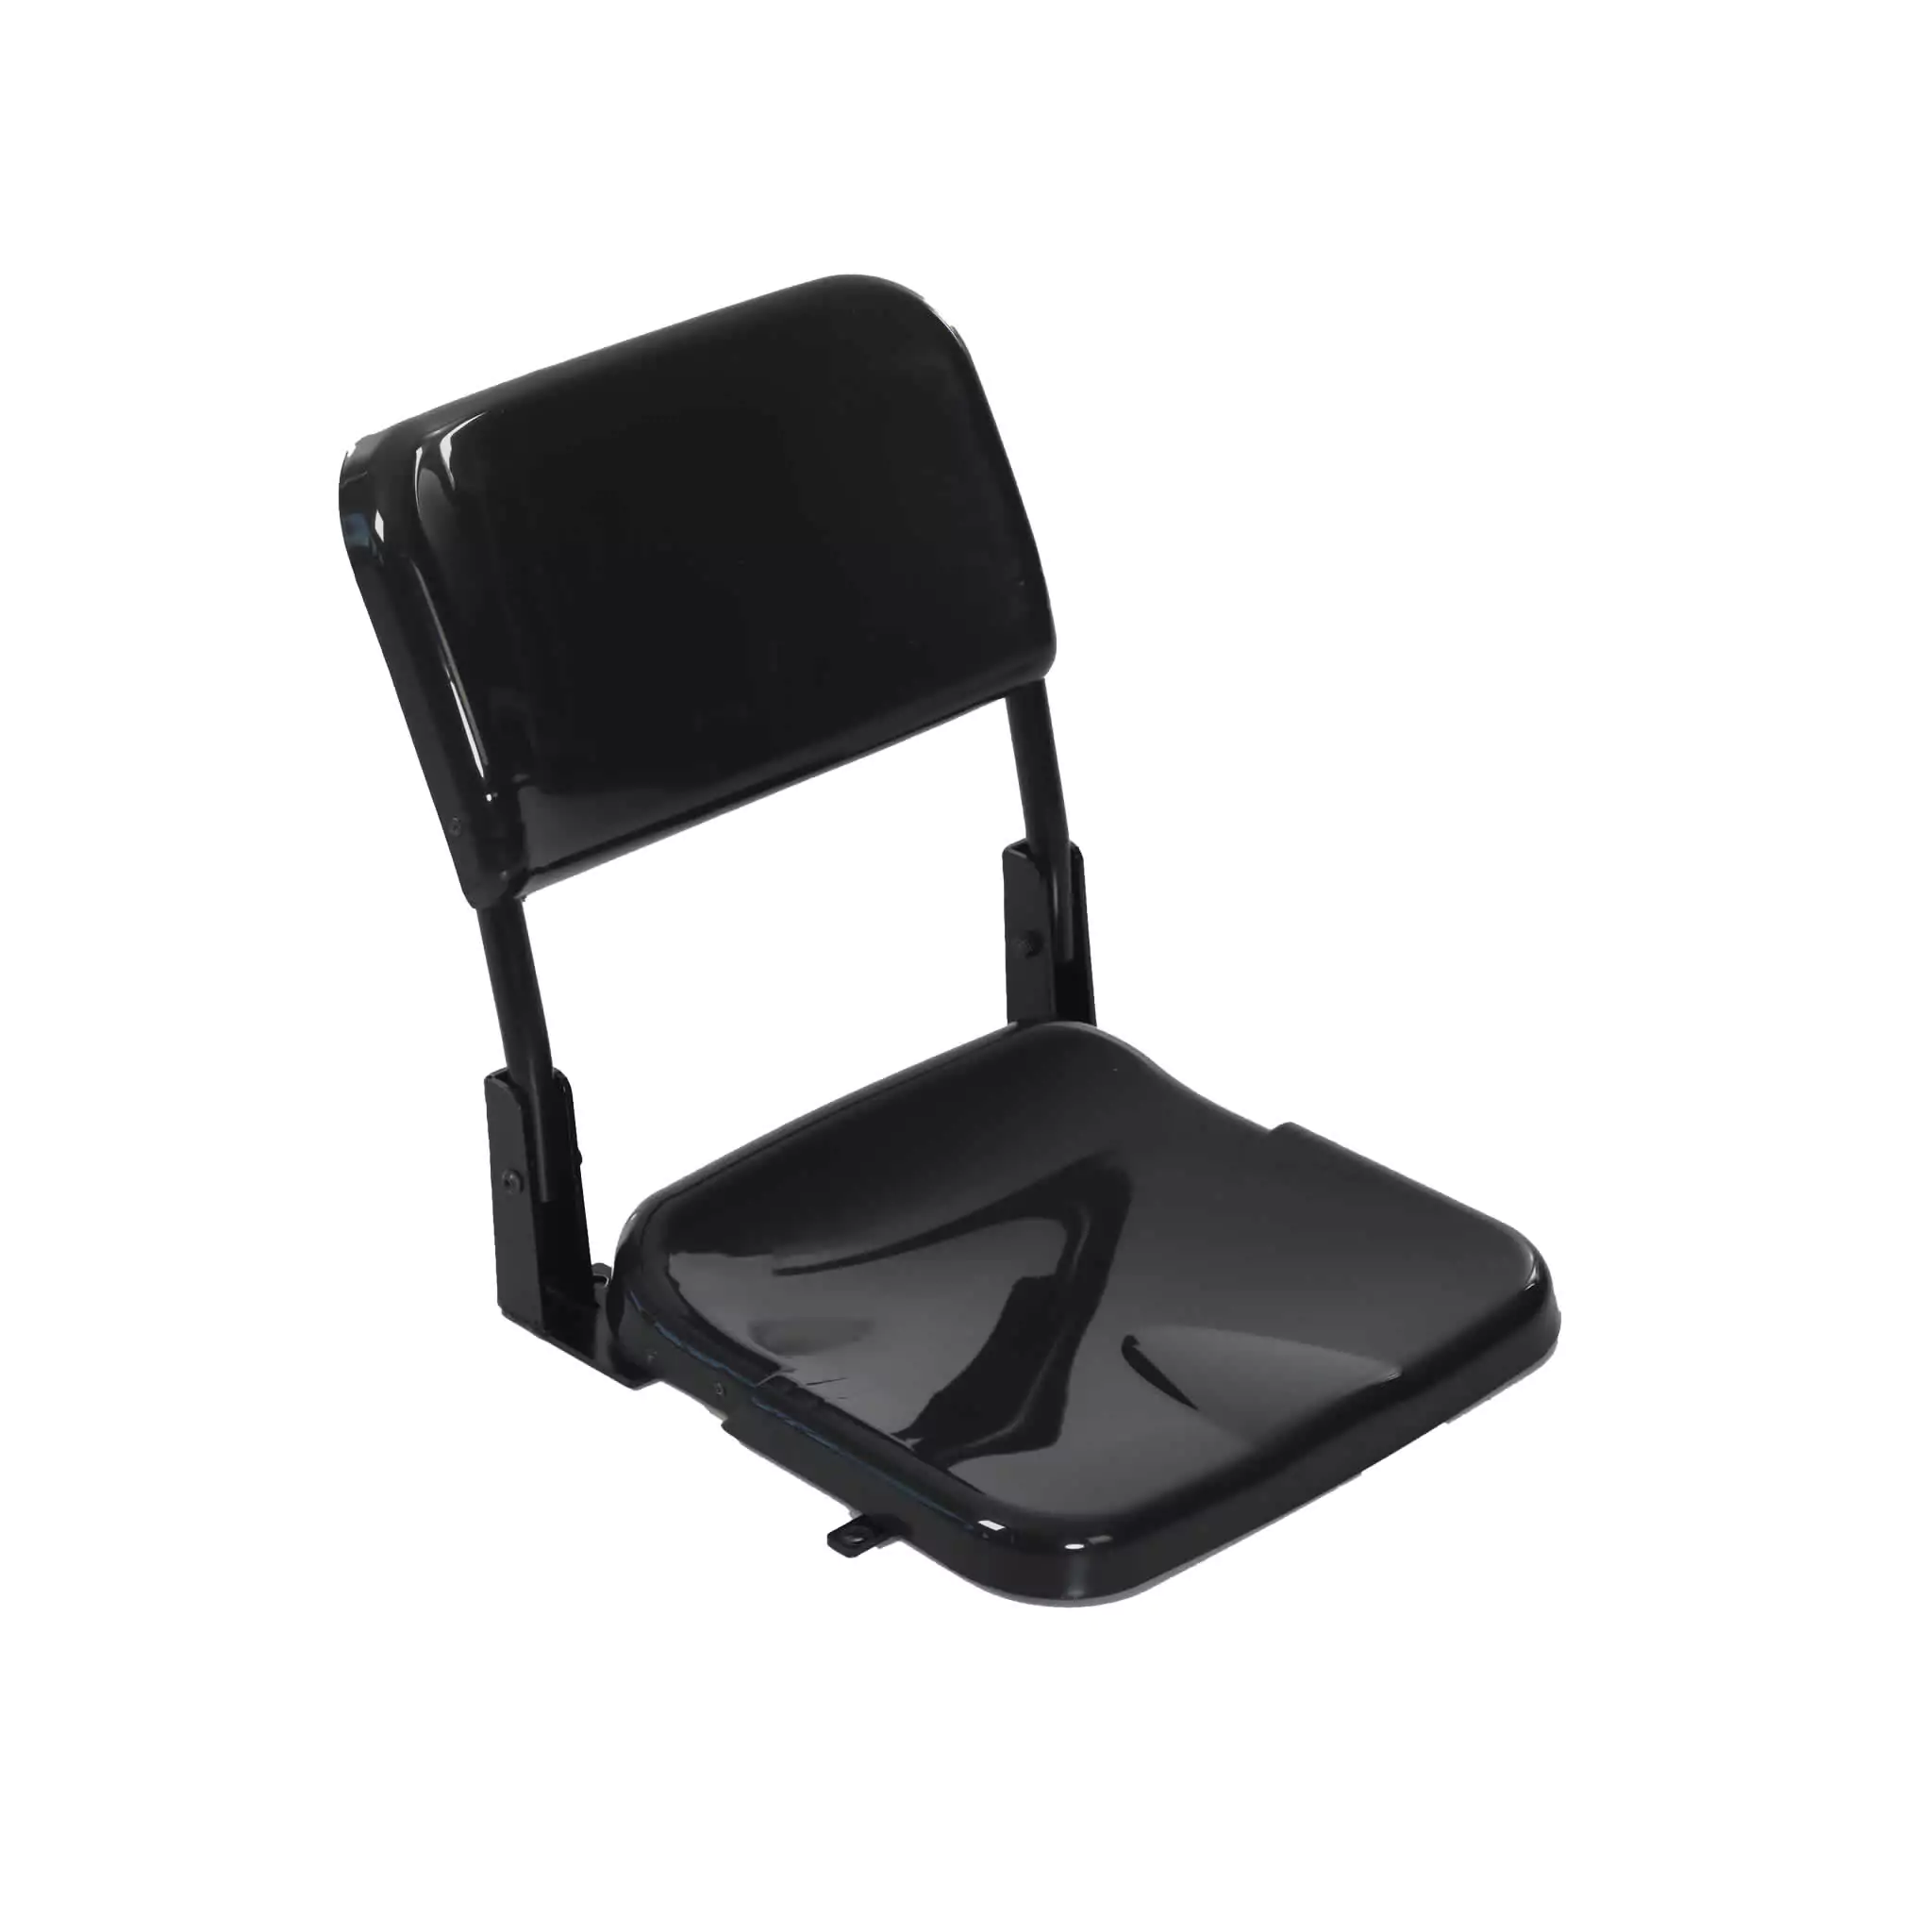 Simko Seating Product Telescopic Stadium Seat Azurit 02